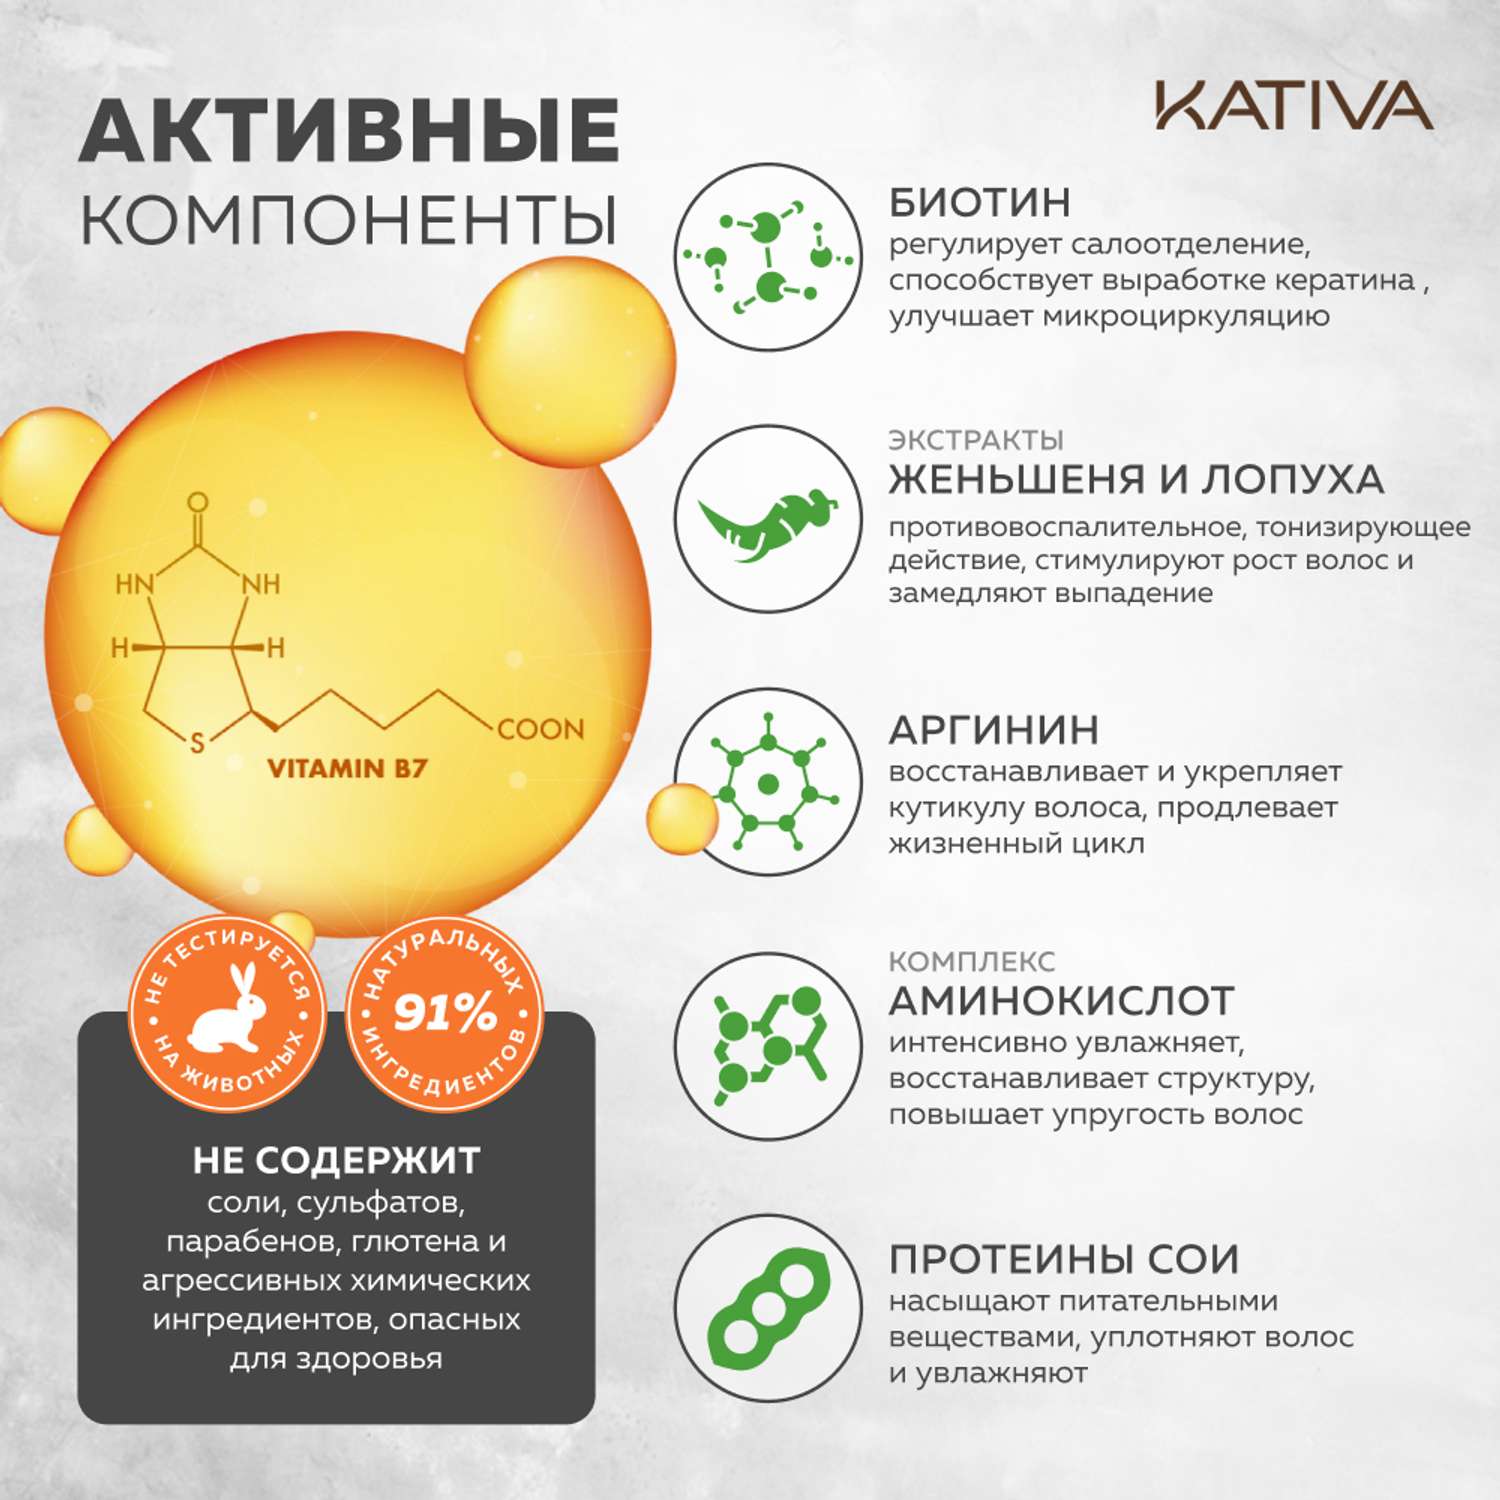 Шампунь Kativa против выпадения волос с биотином Biotina 250 мл - фото 4